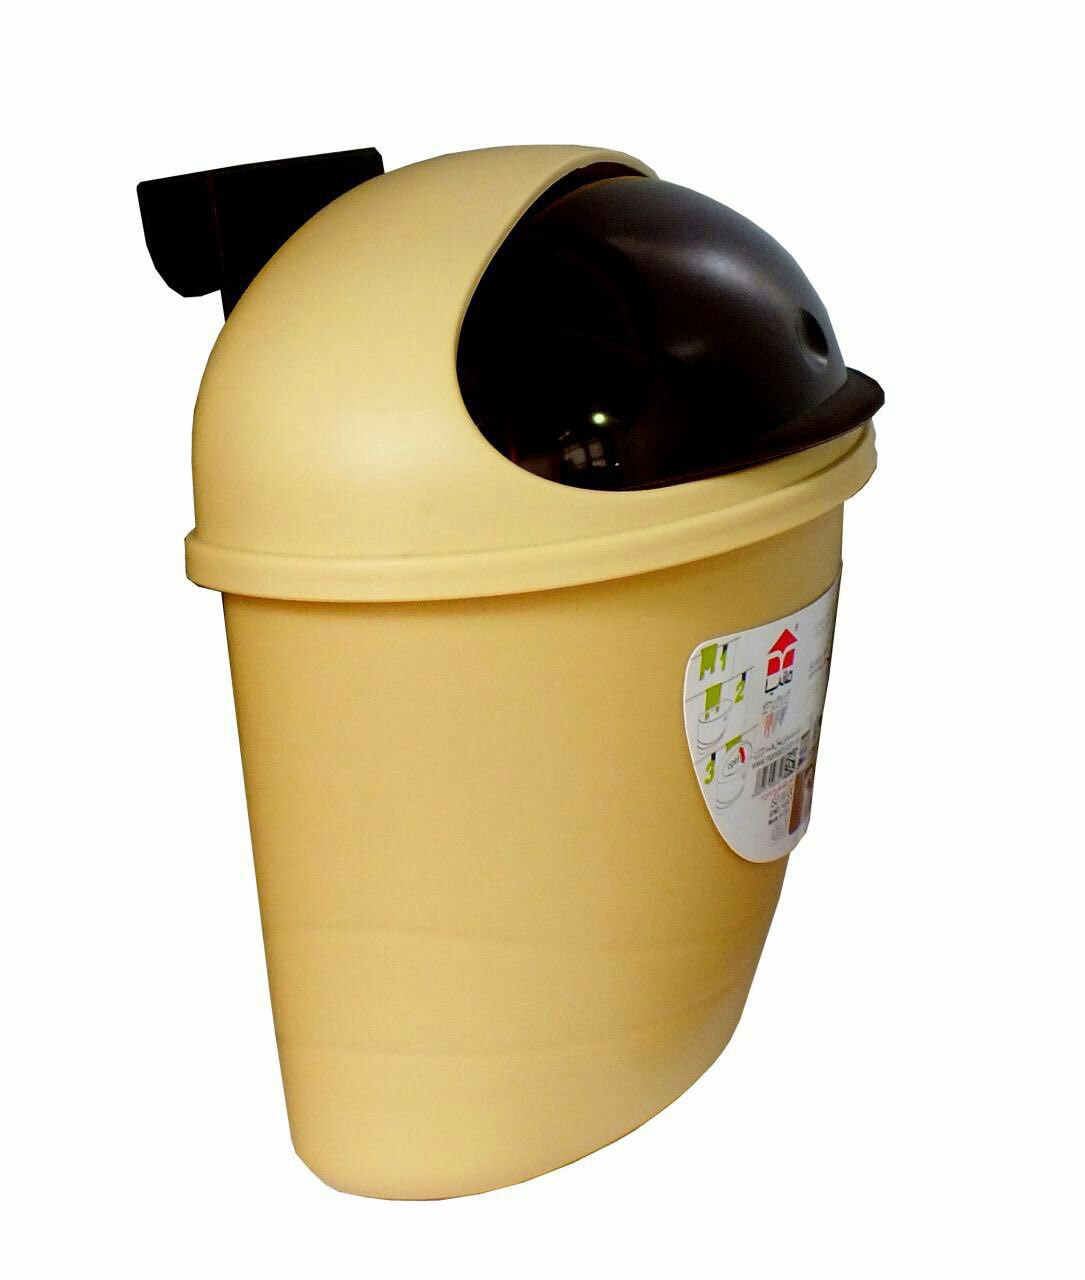 حراج سطل زباله سینک آشپزخانه استوانه ای فقط قیمت 20000 تومان